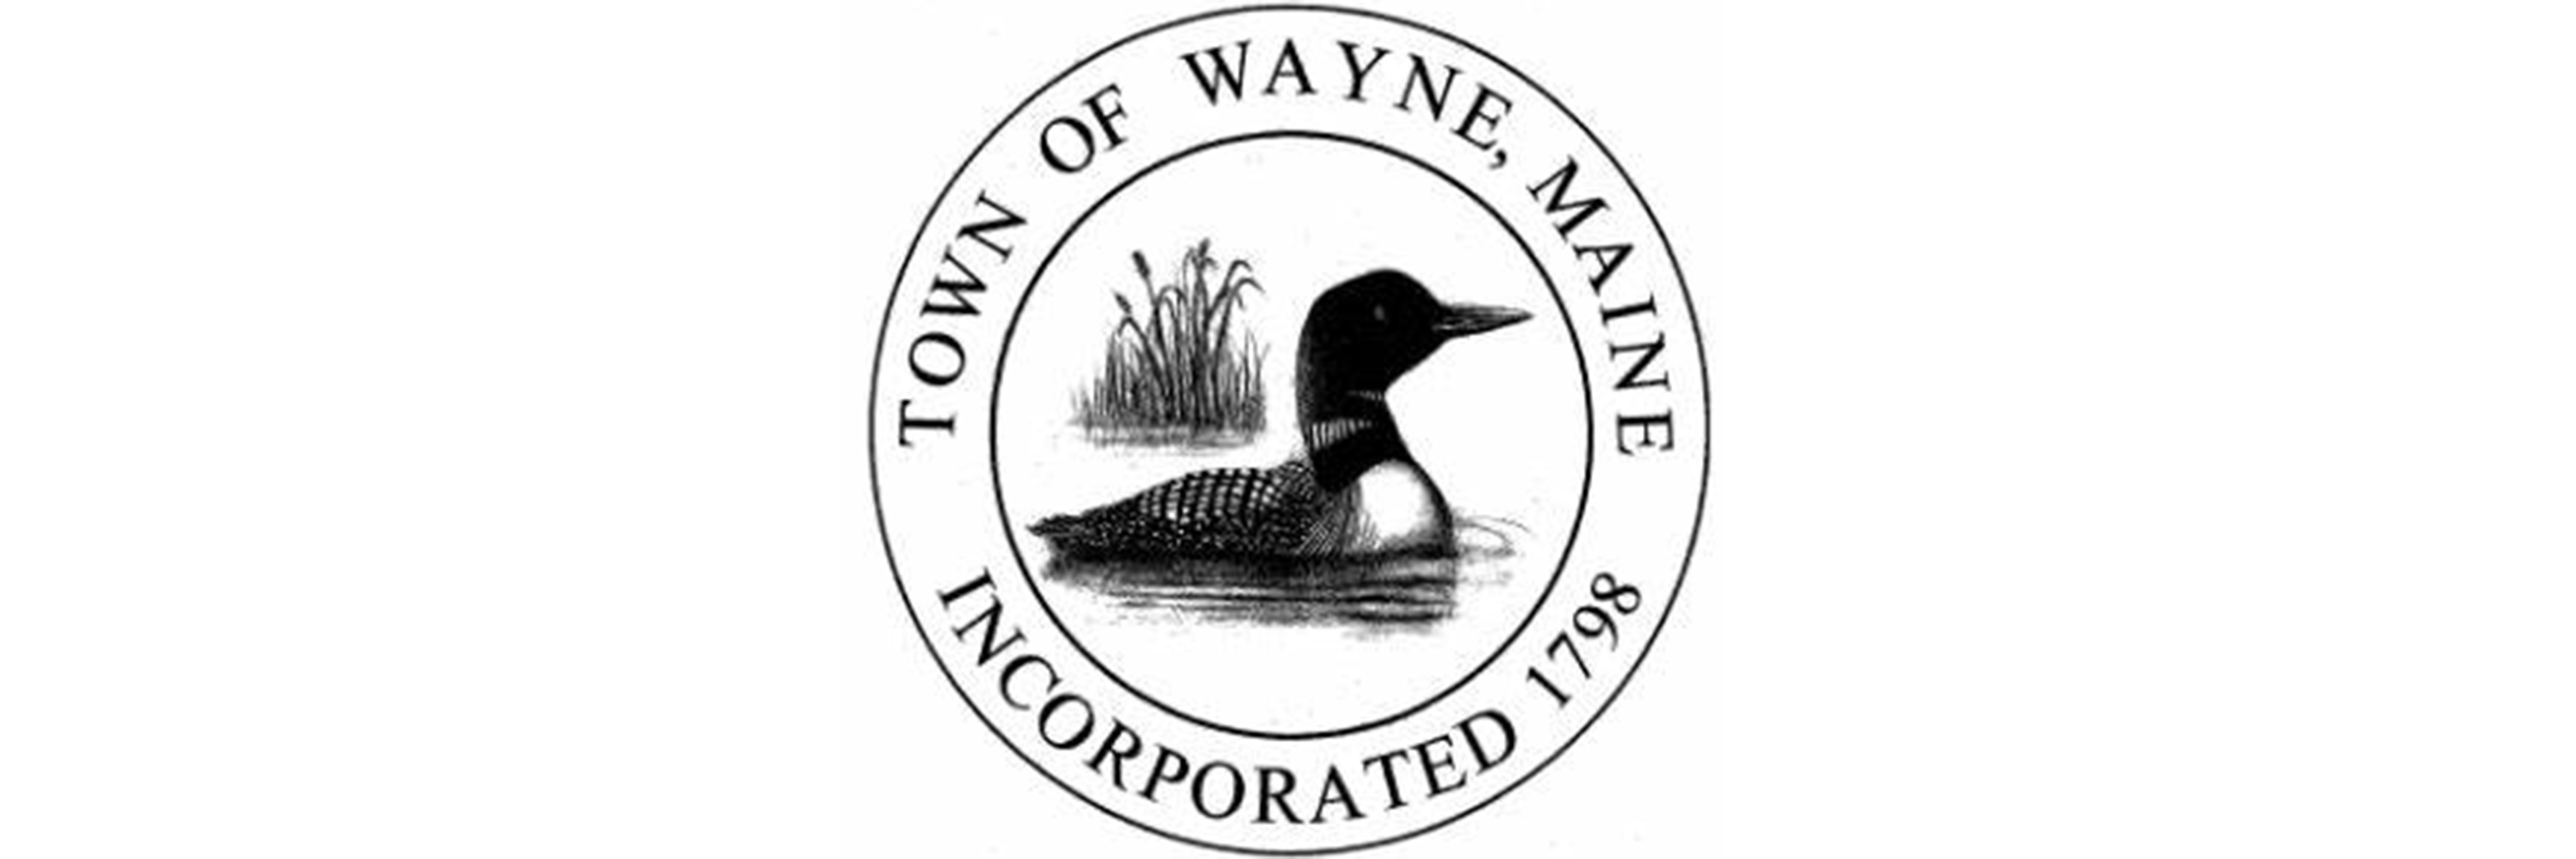 Town of Wayne